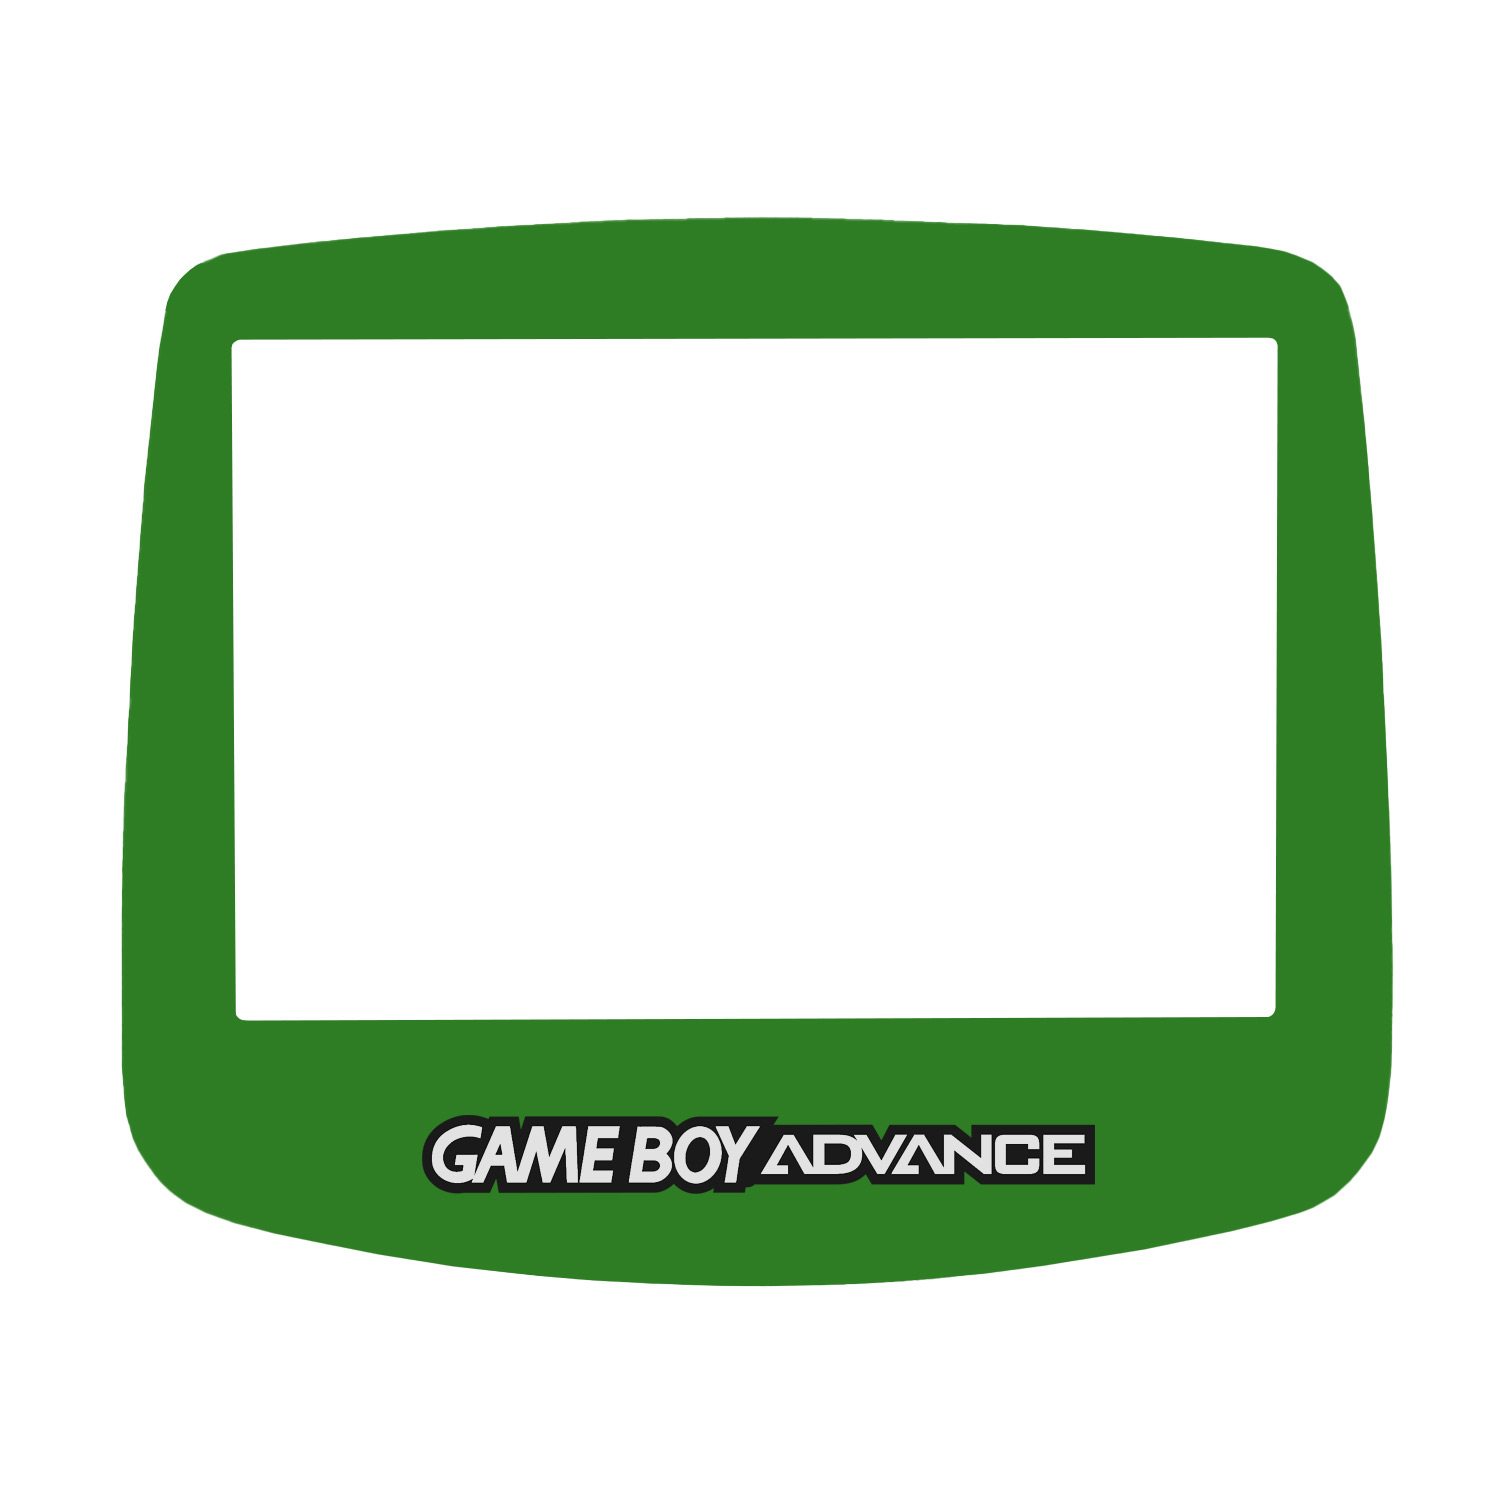 Display Scheibe (Grün) für Game Boy Advance